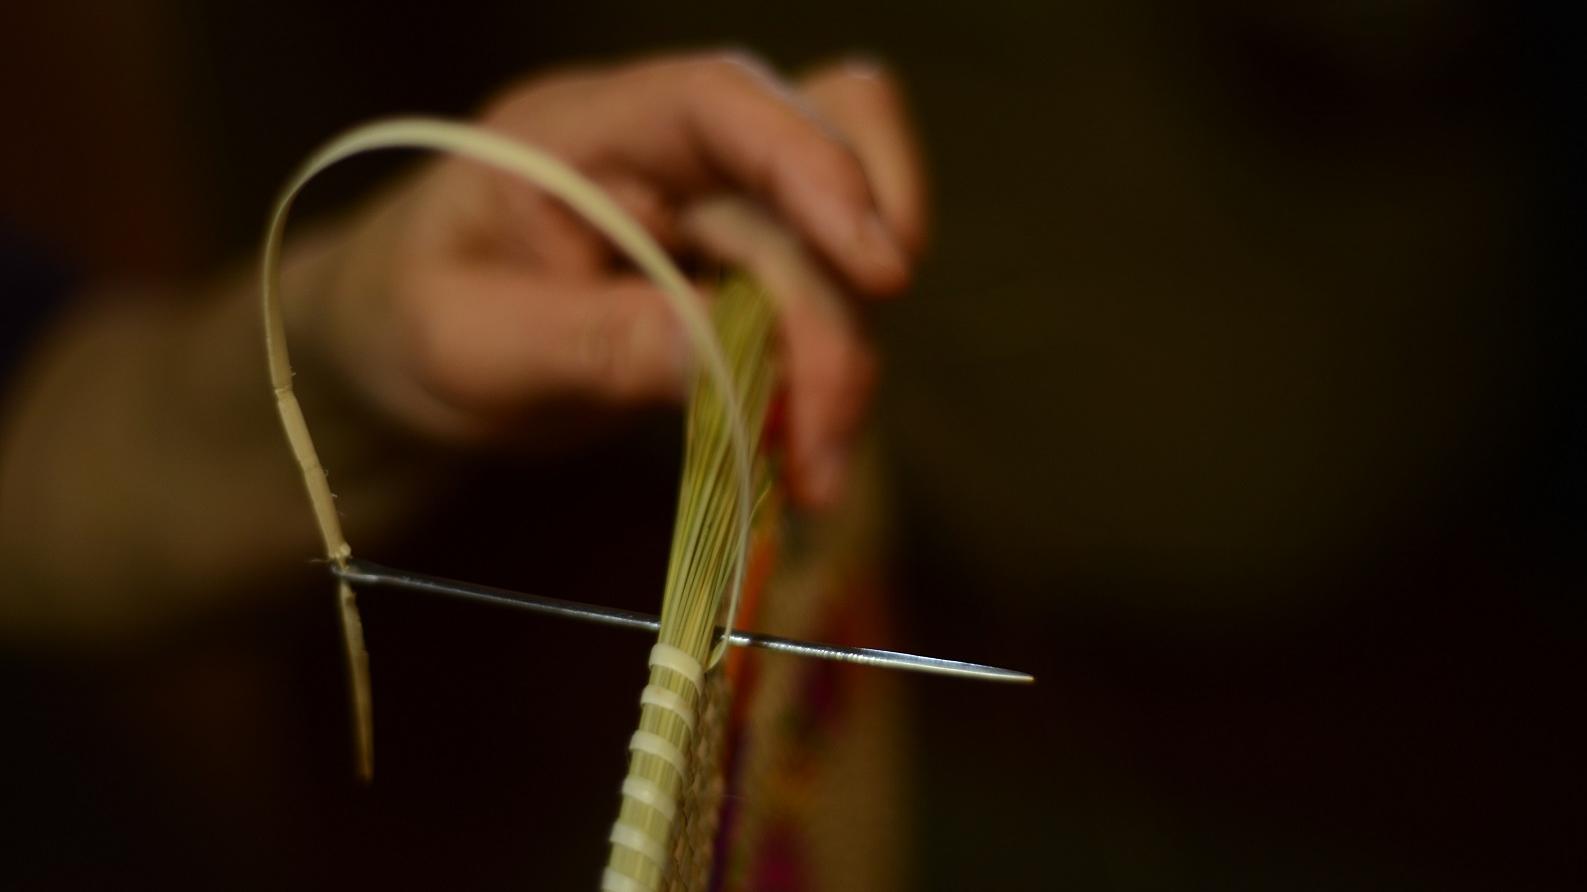 Técnicas y saberes asociados a la cestería de coirón y chupón en Hualqui- aguja- Fotografía Manuel Morales